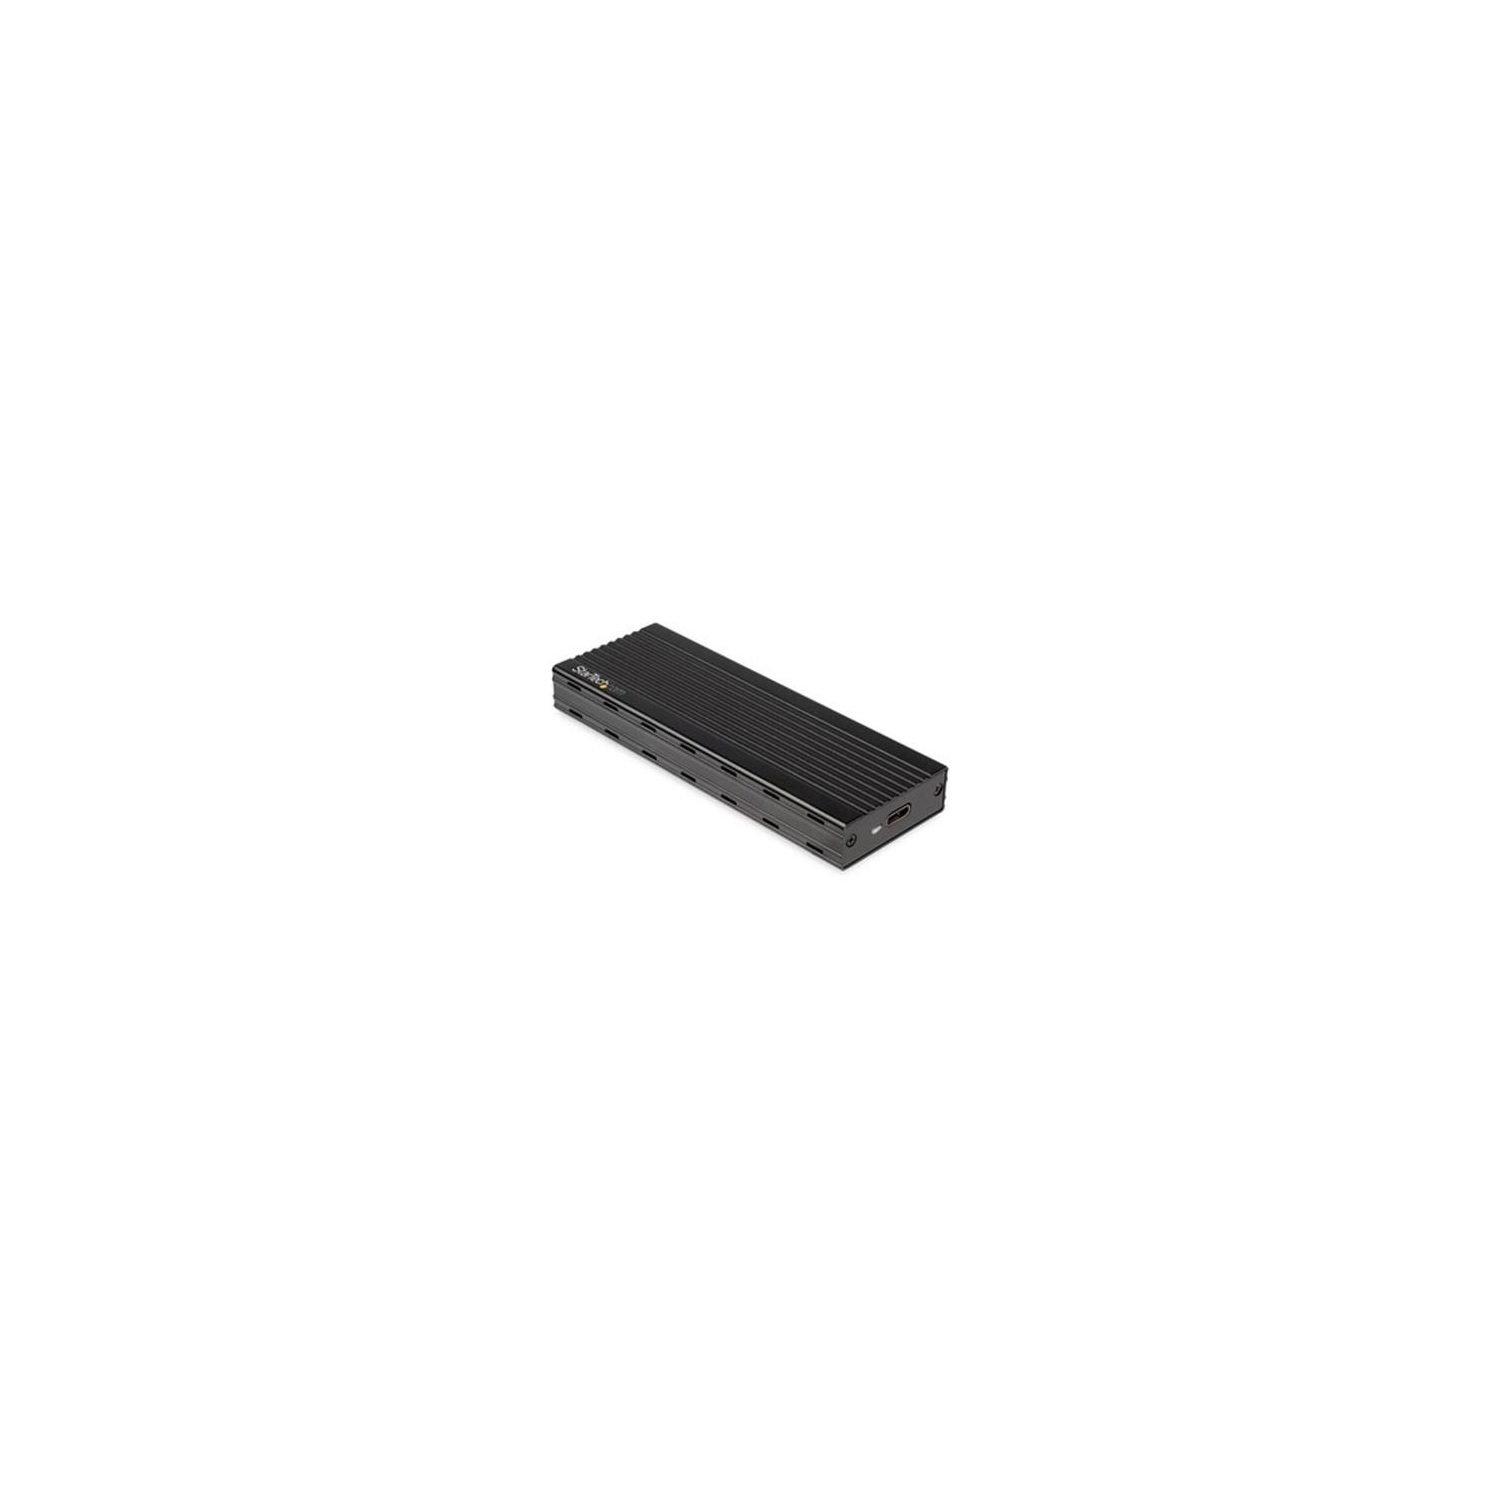 Boîtier SSD M.2 NVMe de StarTech pour SSD PCIe - USB 3.1 de type C de 2e  génération - Boîtier NVMe externe - compatible Thunderbolt 3 